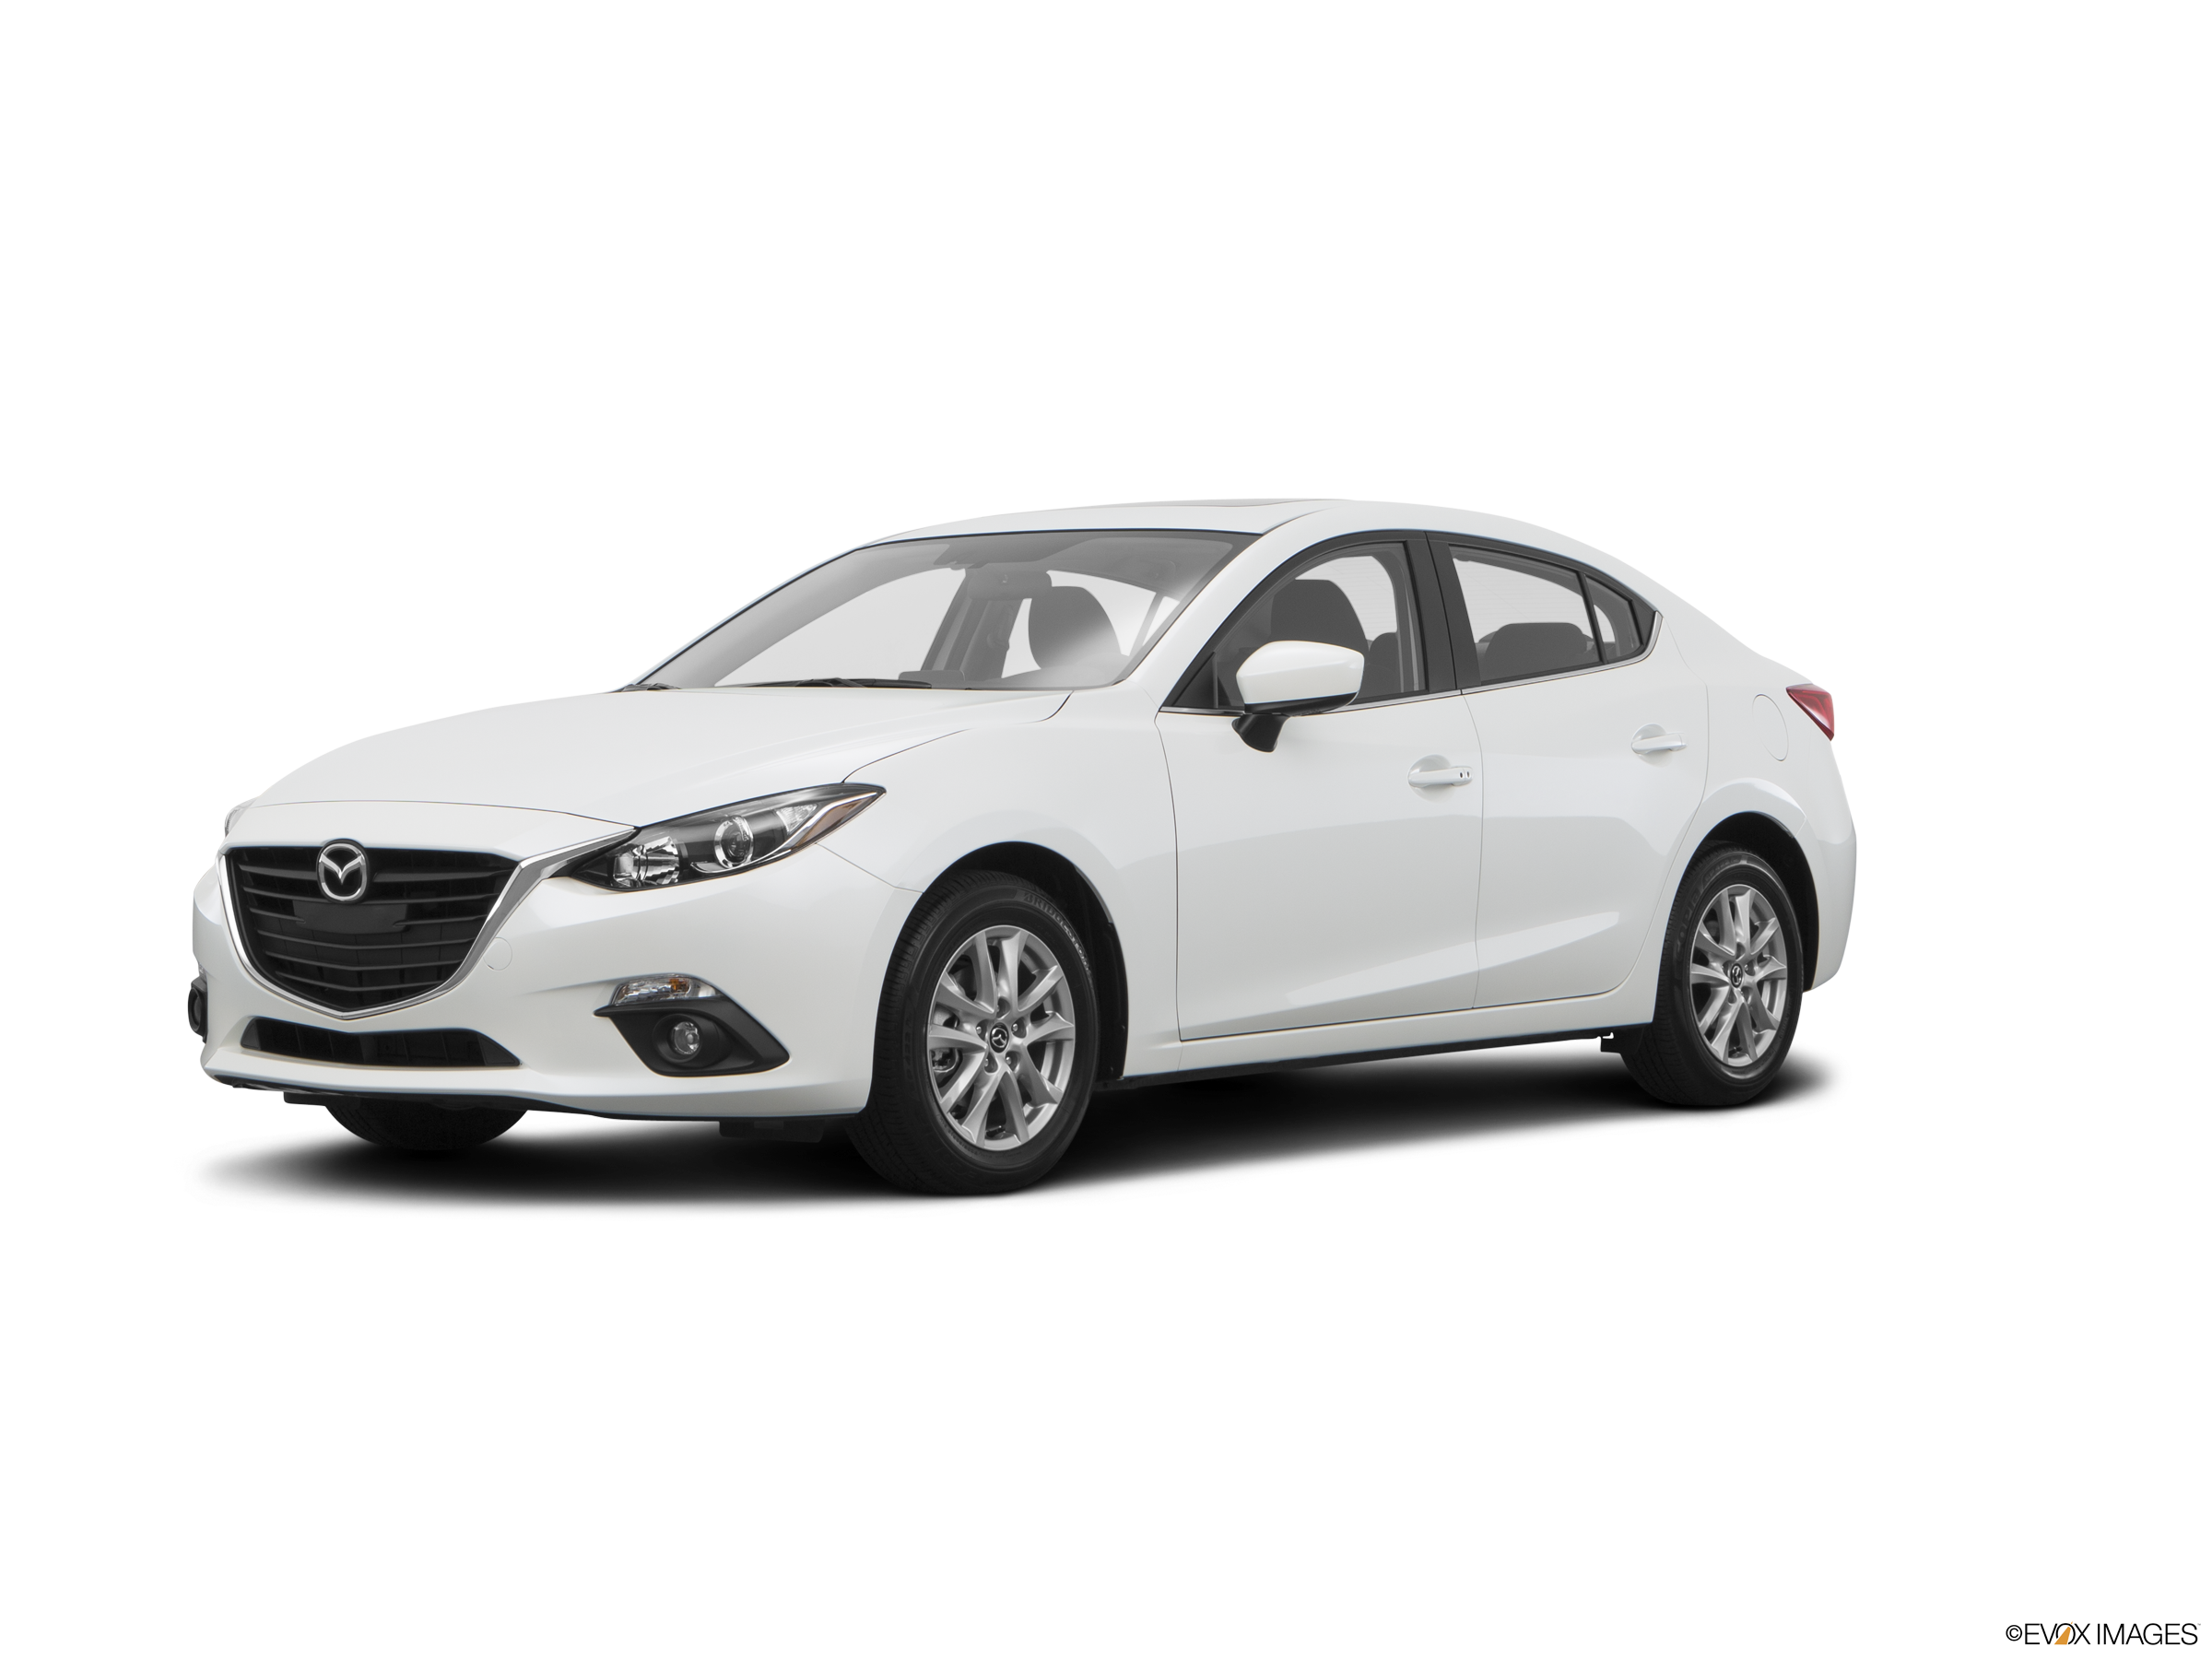 ĐÁNH GIÁ XE Mazda 3 2016  thêm trang bị giảm giá thành